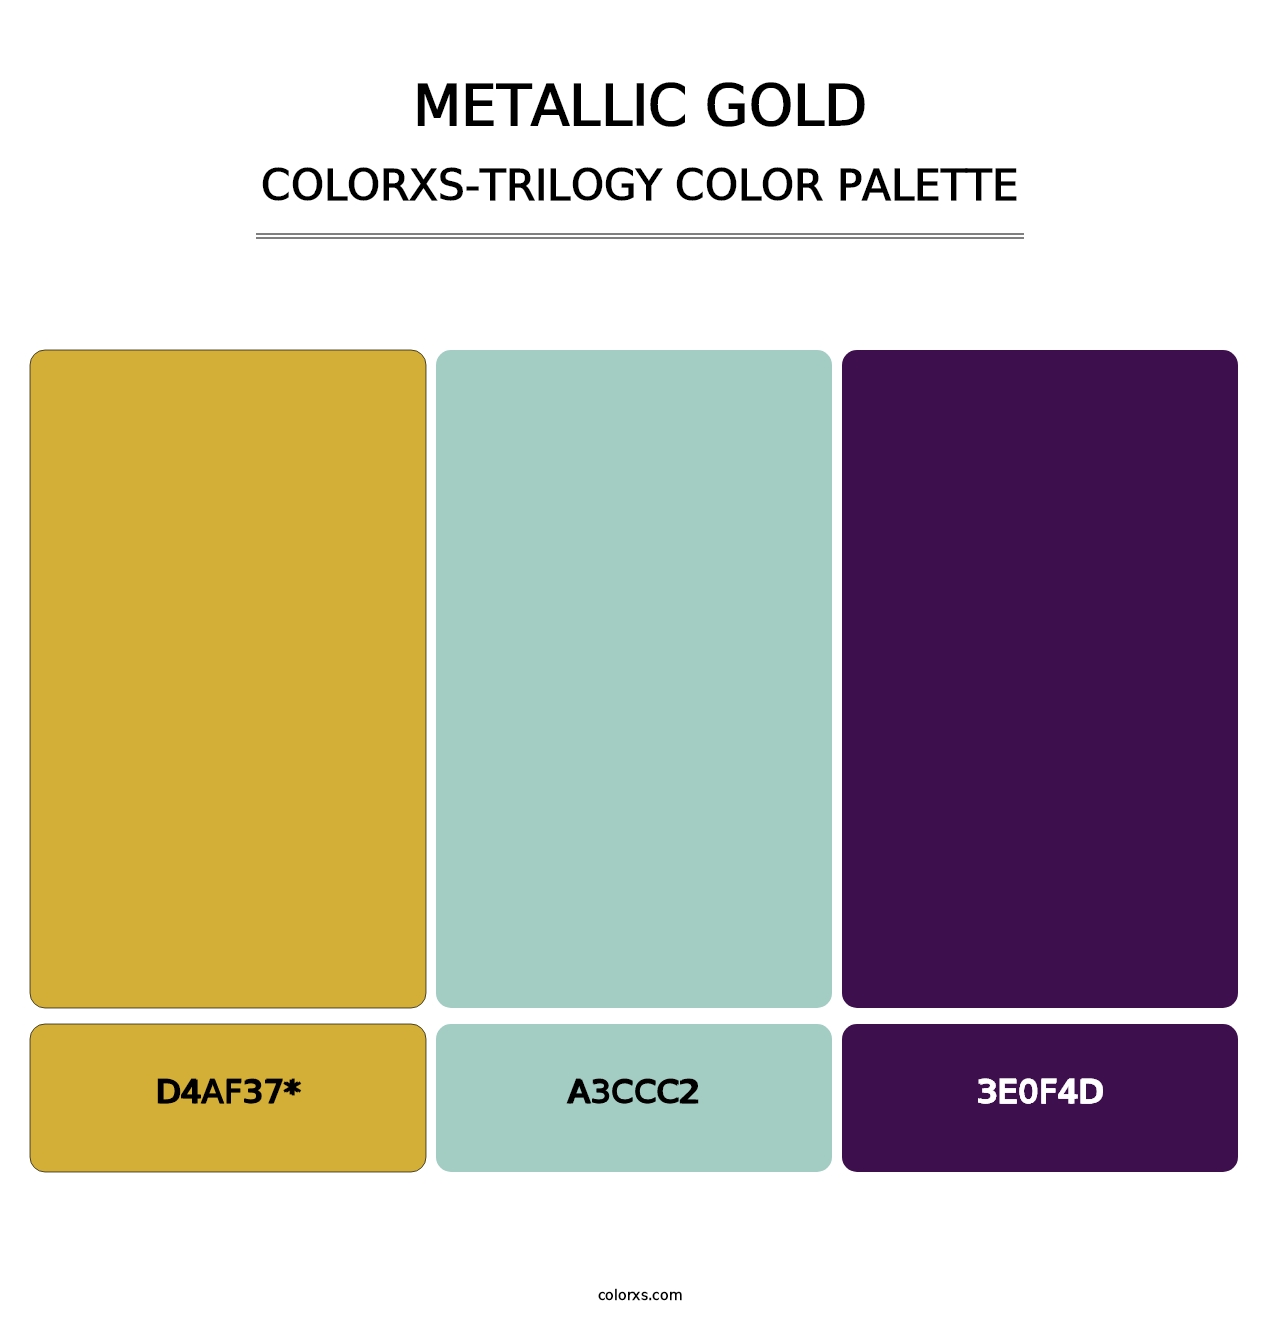 Metallic Gold - Colorxs Trilogy Palette